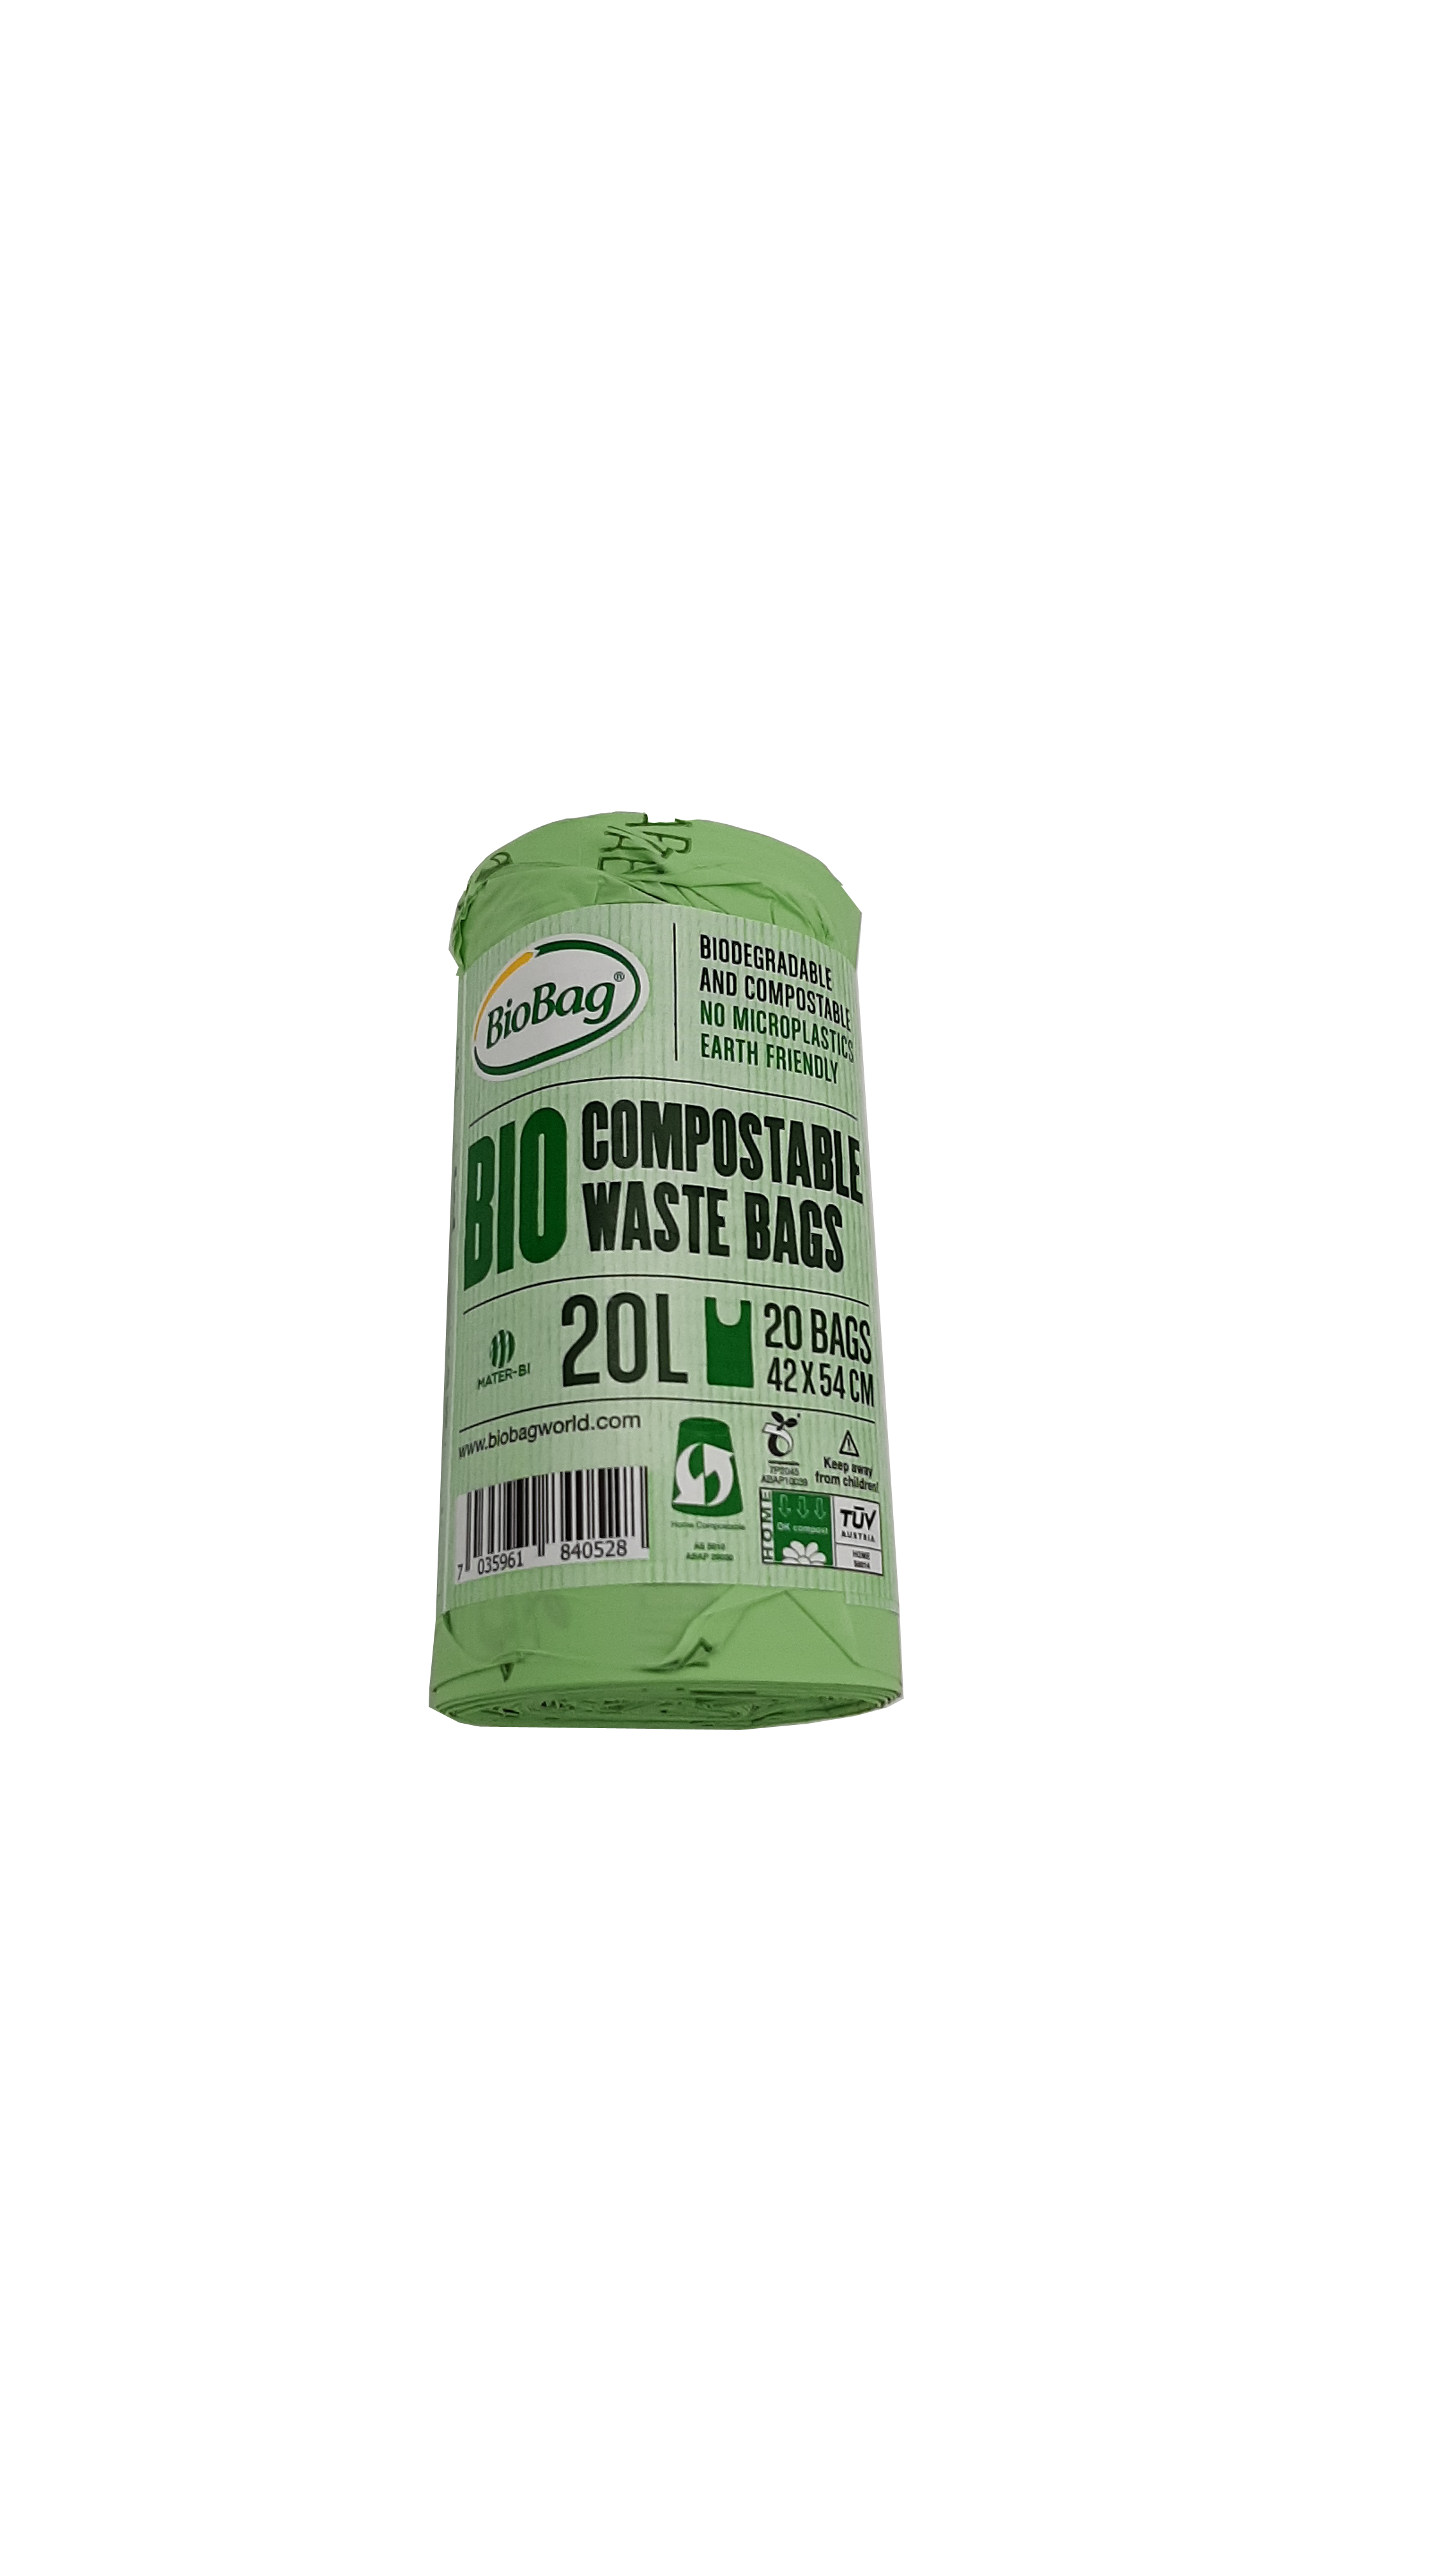 Kompostierbare Biomüllbeutel 20 Liter - 6 Rollen à 20 Beutel, 120 Stück - OK compost HOME zertifiziert